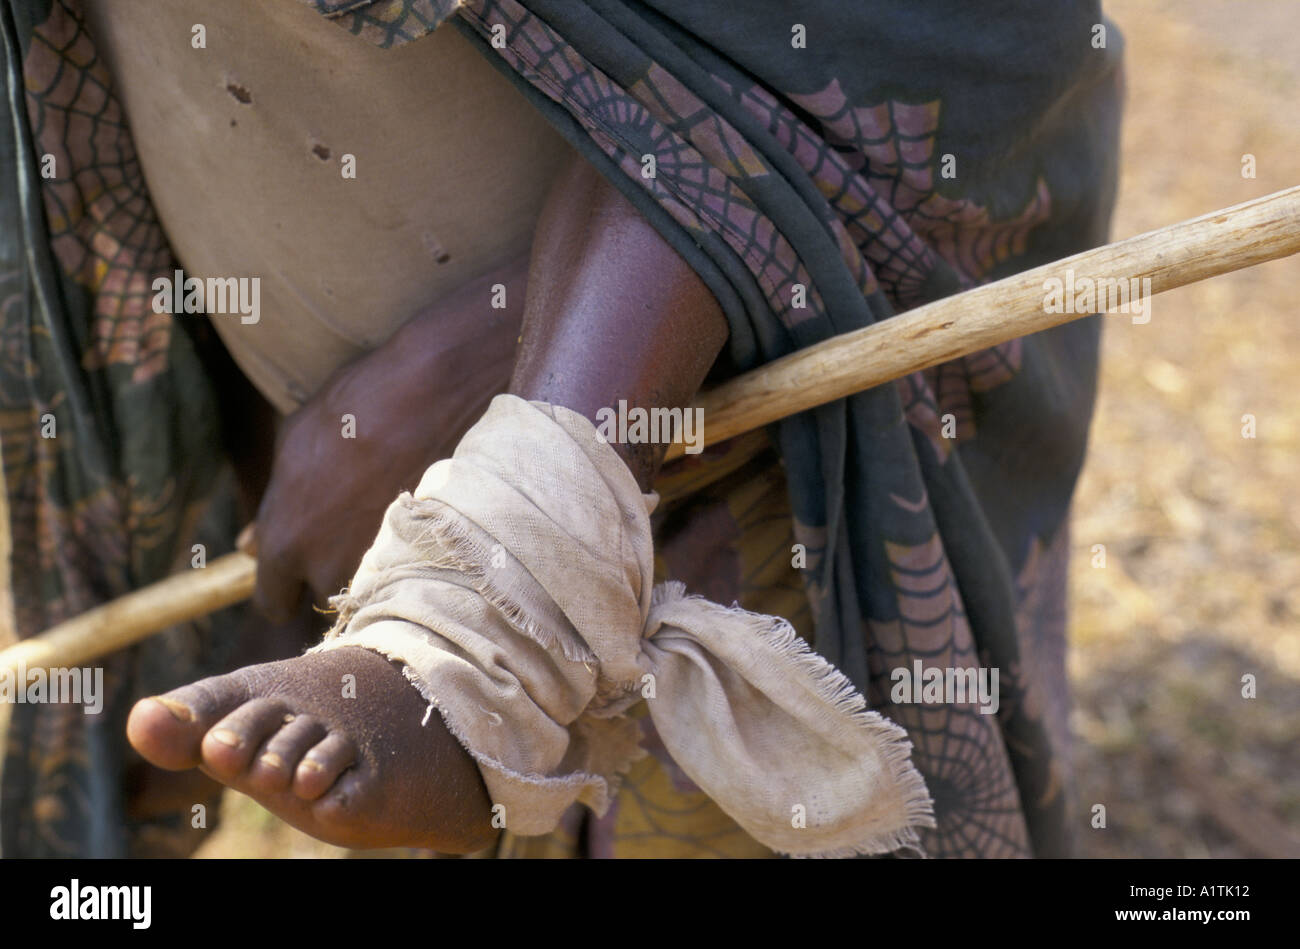 Enfant de réfugiés rwandais avec les pieds enflés CAUSÉS PAR LA MARCHE SUR DES ROUTES GOUDRONNÉES EN COURS PAR LE ZAÏRE PARENT AOÛT SEPT 1994 Banque D'Images